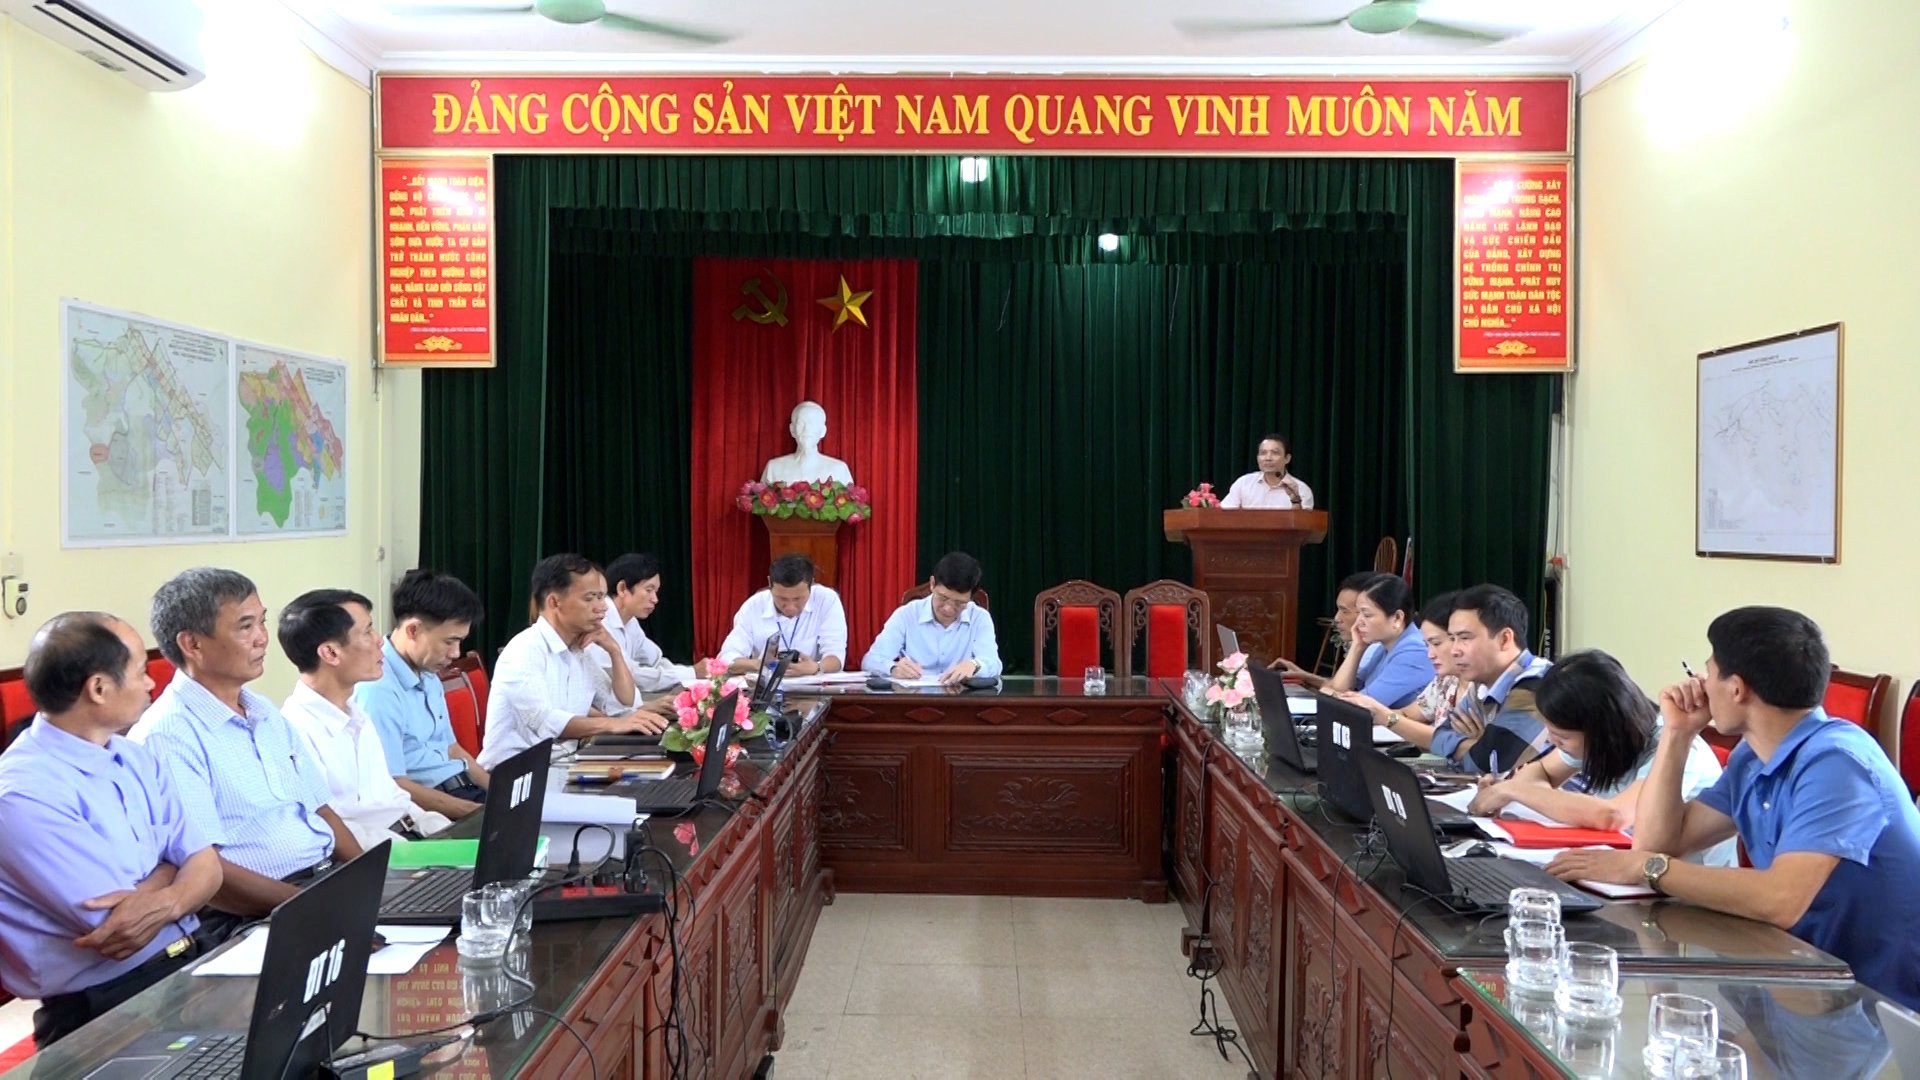 UBND thành phố tổ chức hội nghị tập huấn về kỹ năng số trong chính quyền số và kiến thức về công nghệ thông tin cho lãnh đạo và cán bộ công chức xã Đông Sơn